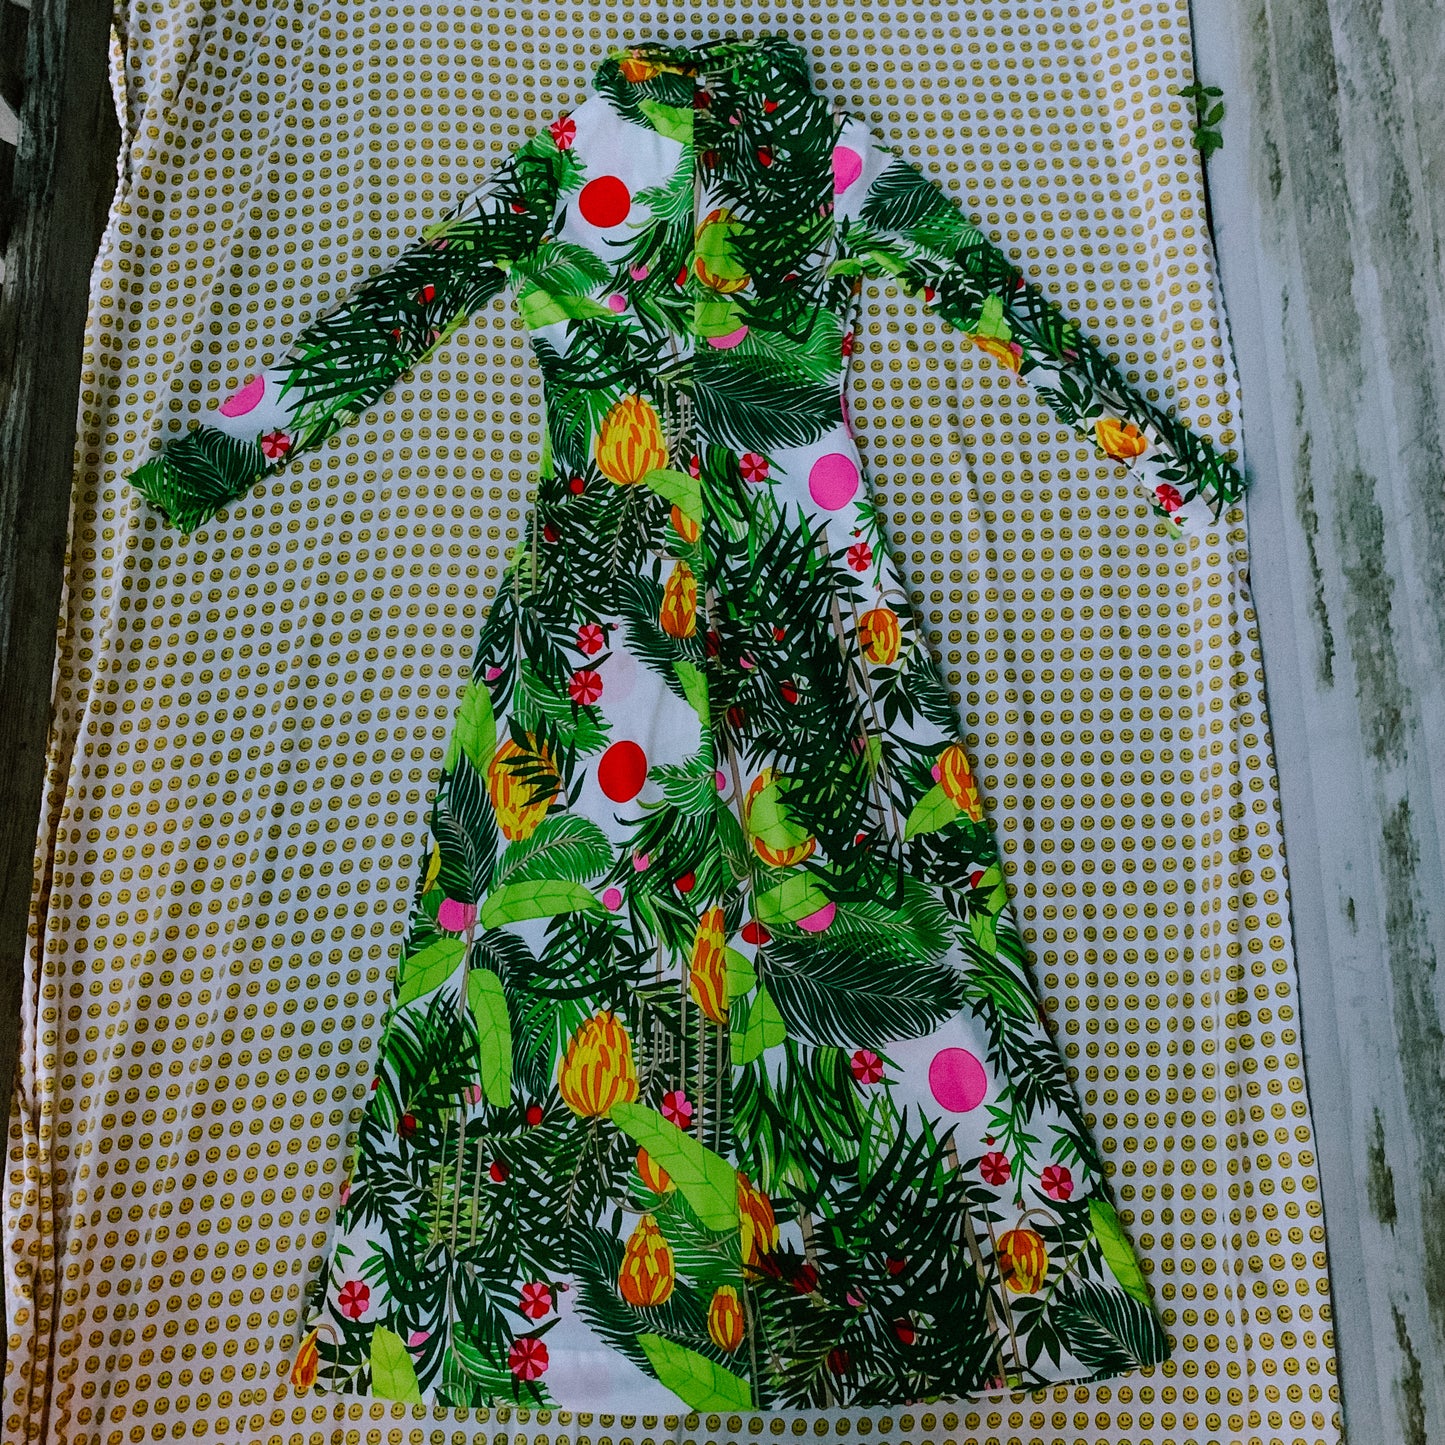 chiquita banana maxi dress (inspired by stew leonard’s) (XS-M)